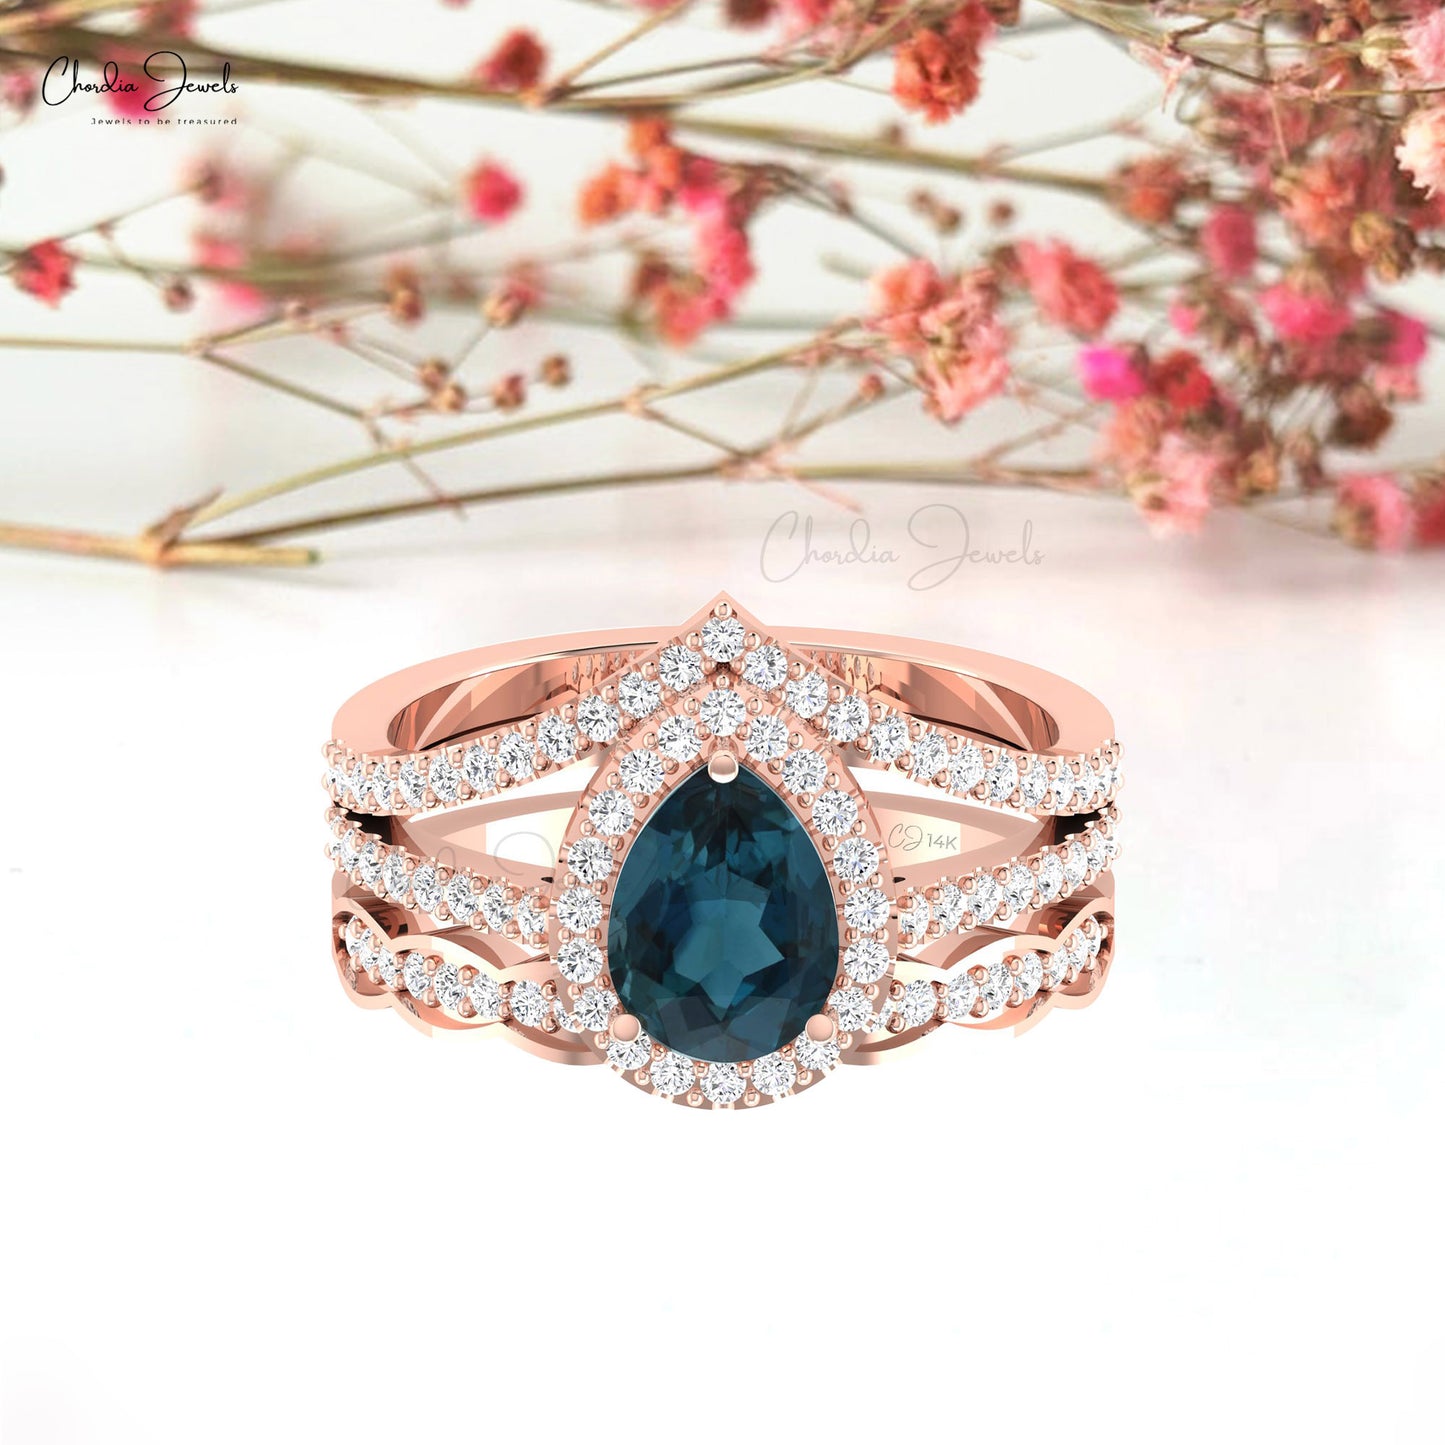 Genuine London Blue Topaz Split Shank Ring Elegant 14k Solid Gold Diamond Halo Ring For Her